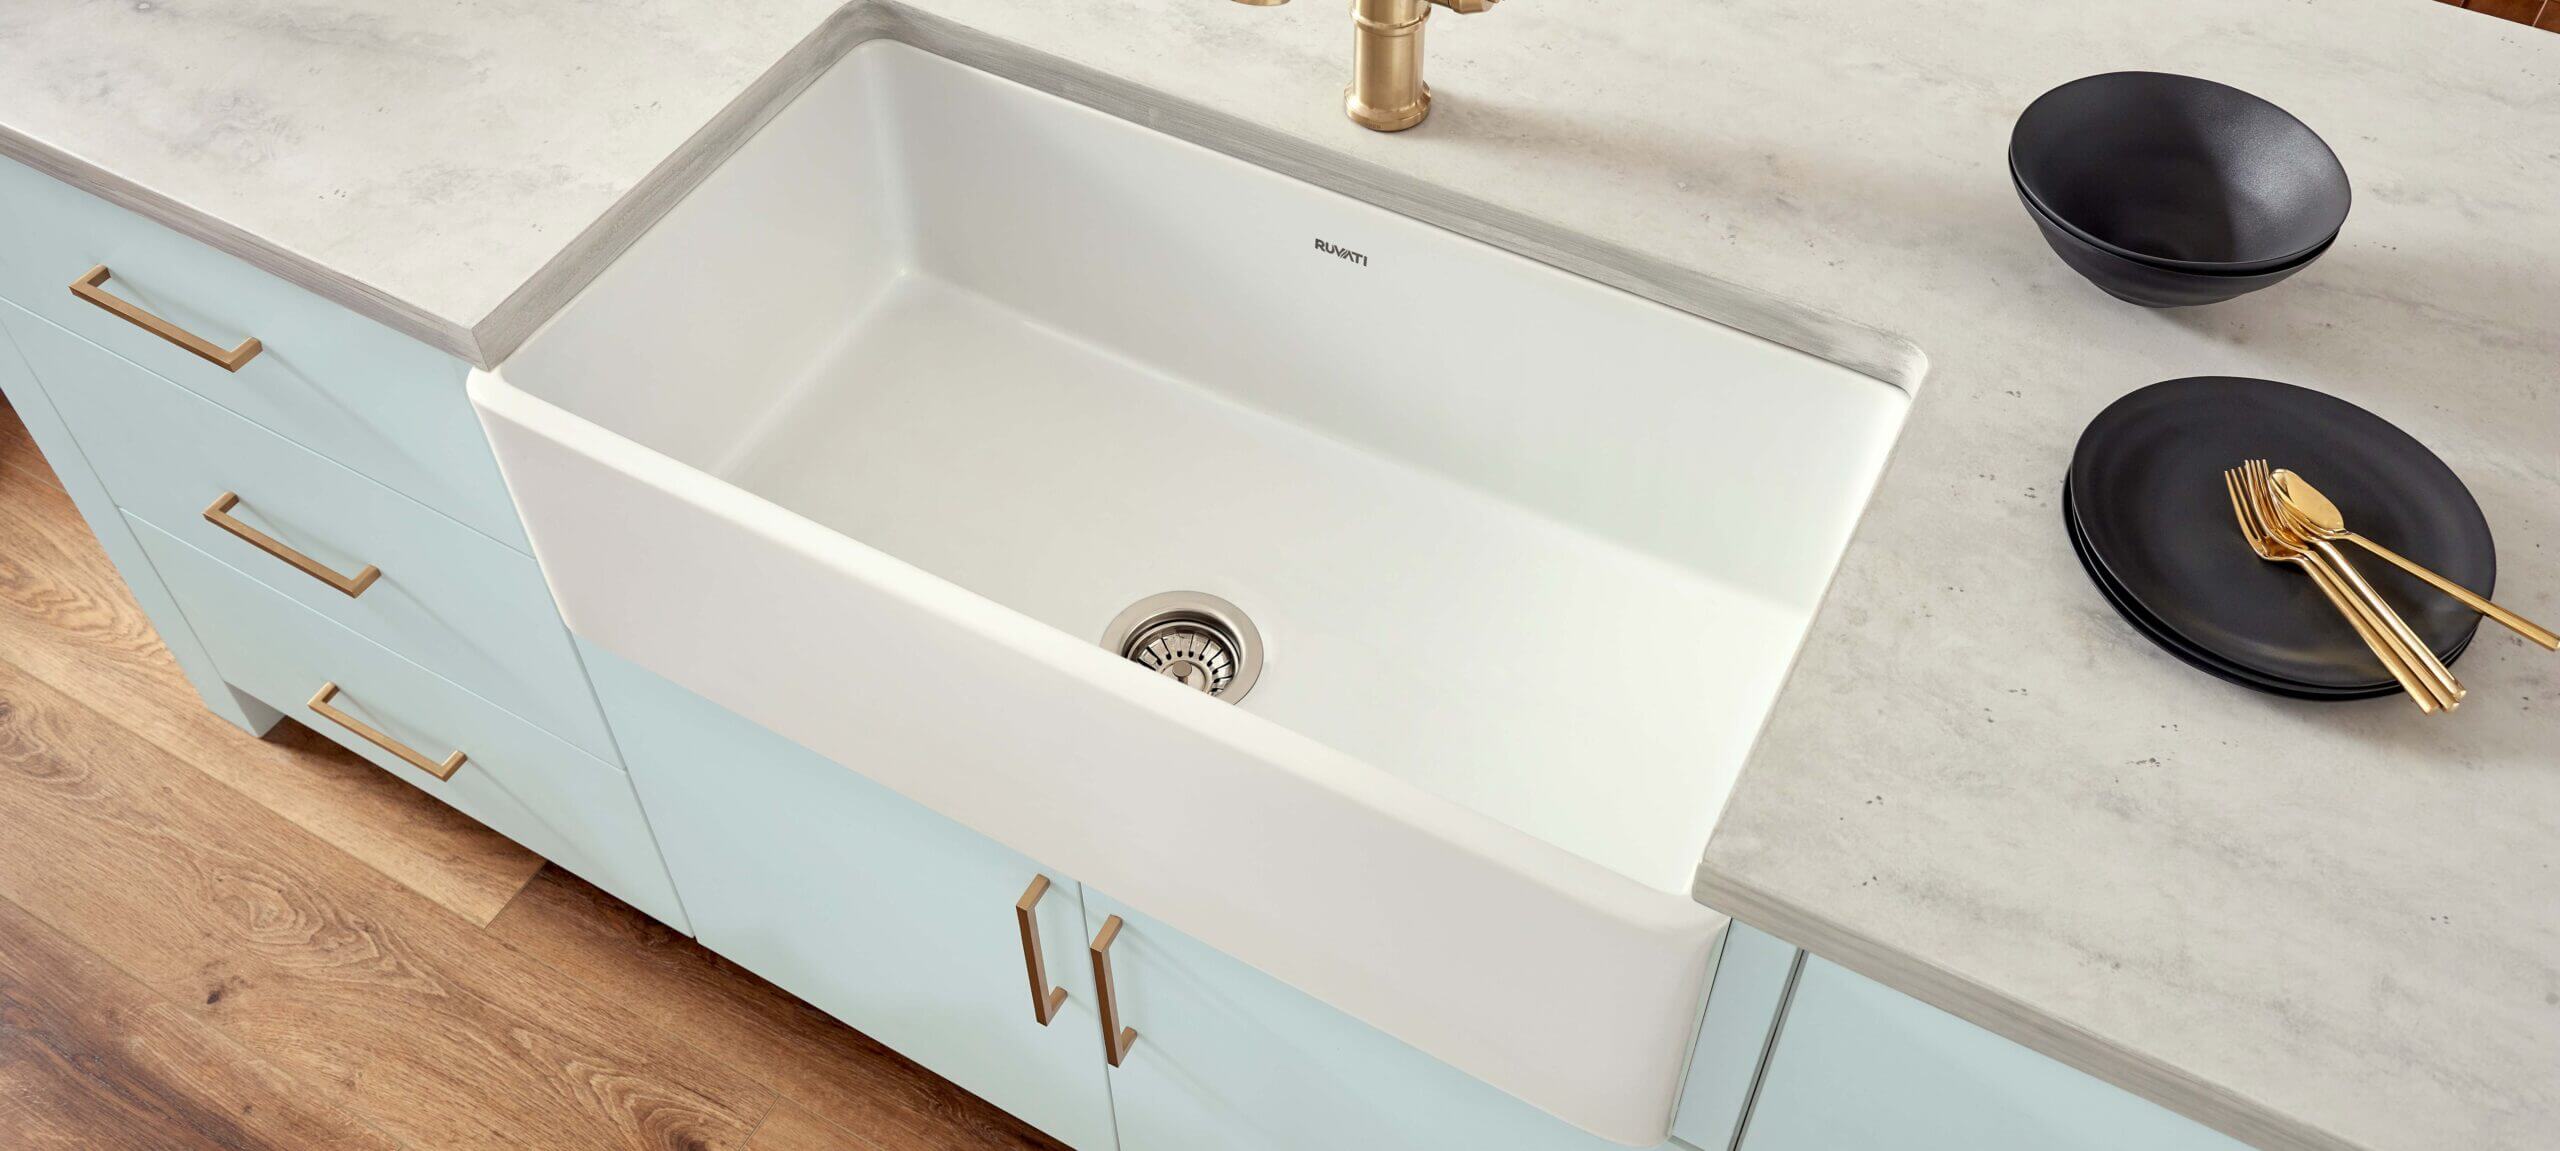 Undermount Kitchen Sink Ideas: Transform Your Kitchen with These Innovative Designs